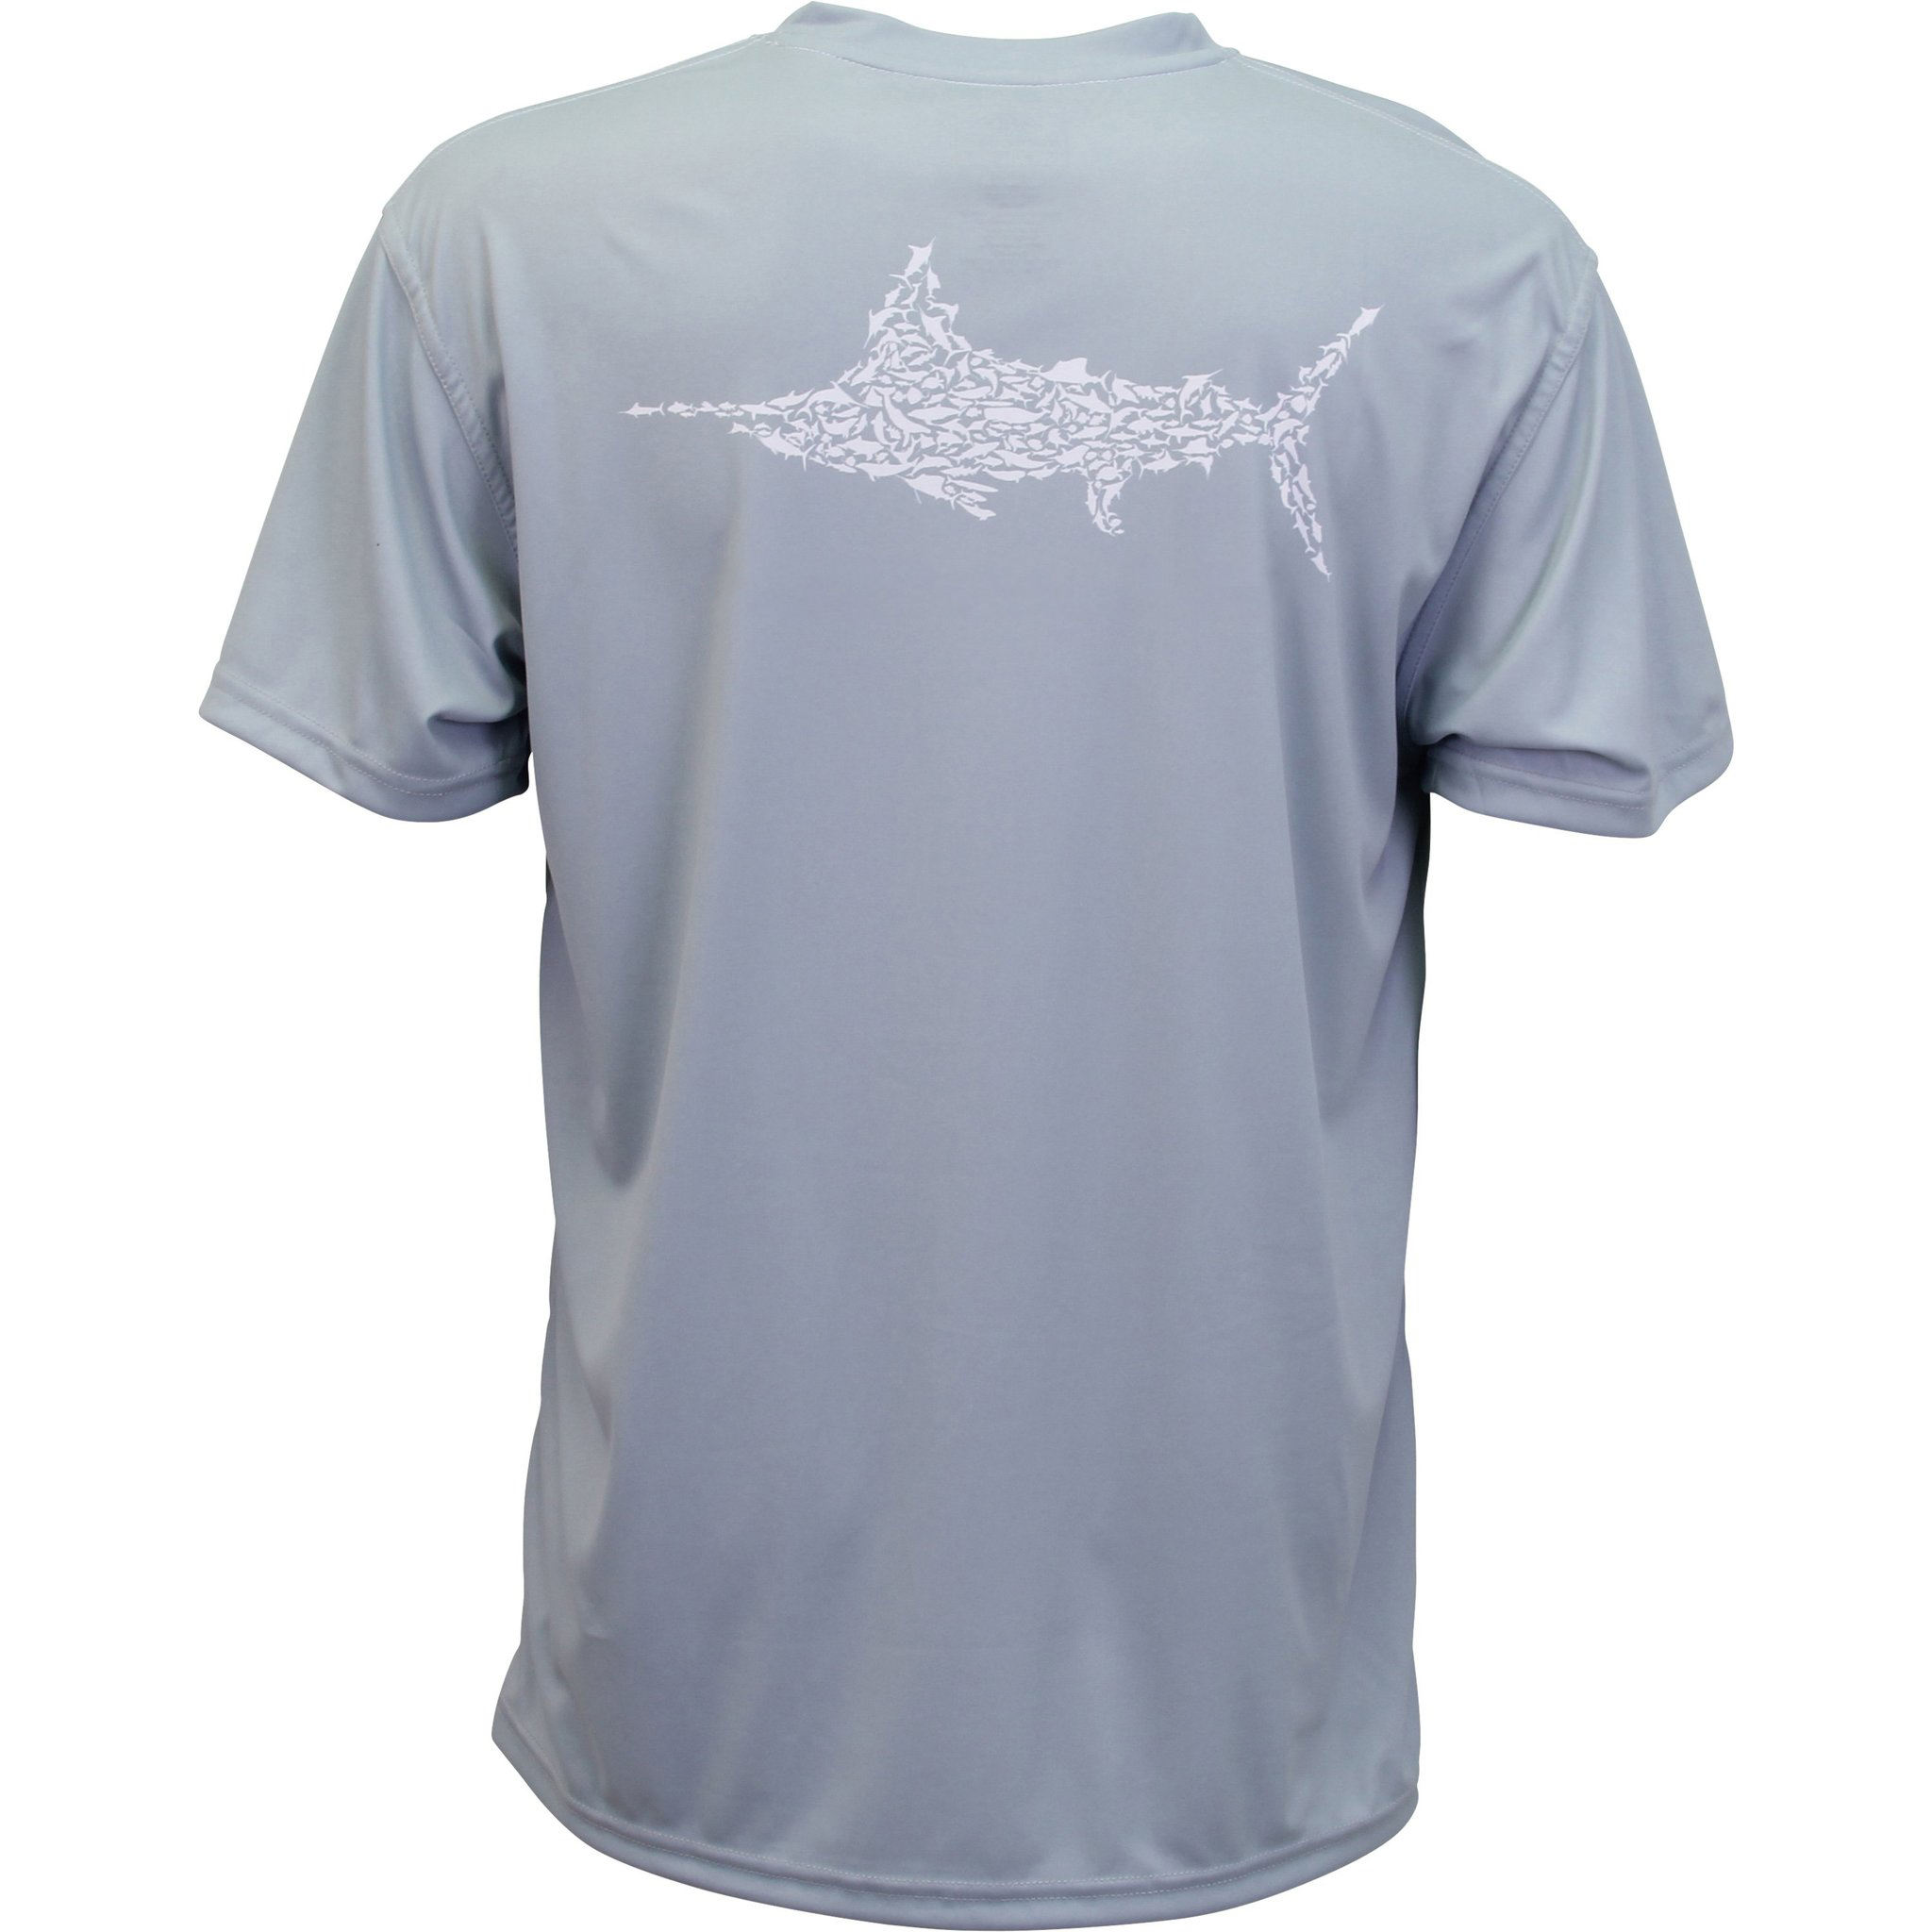 Чоловіча футболка для риболовлі зі 100% поліестером із захистом від сонця зі спеціальним логотипом виробника OEM